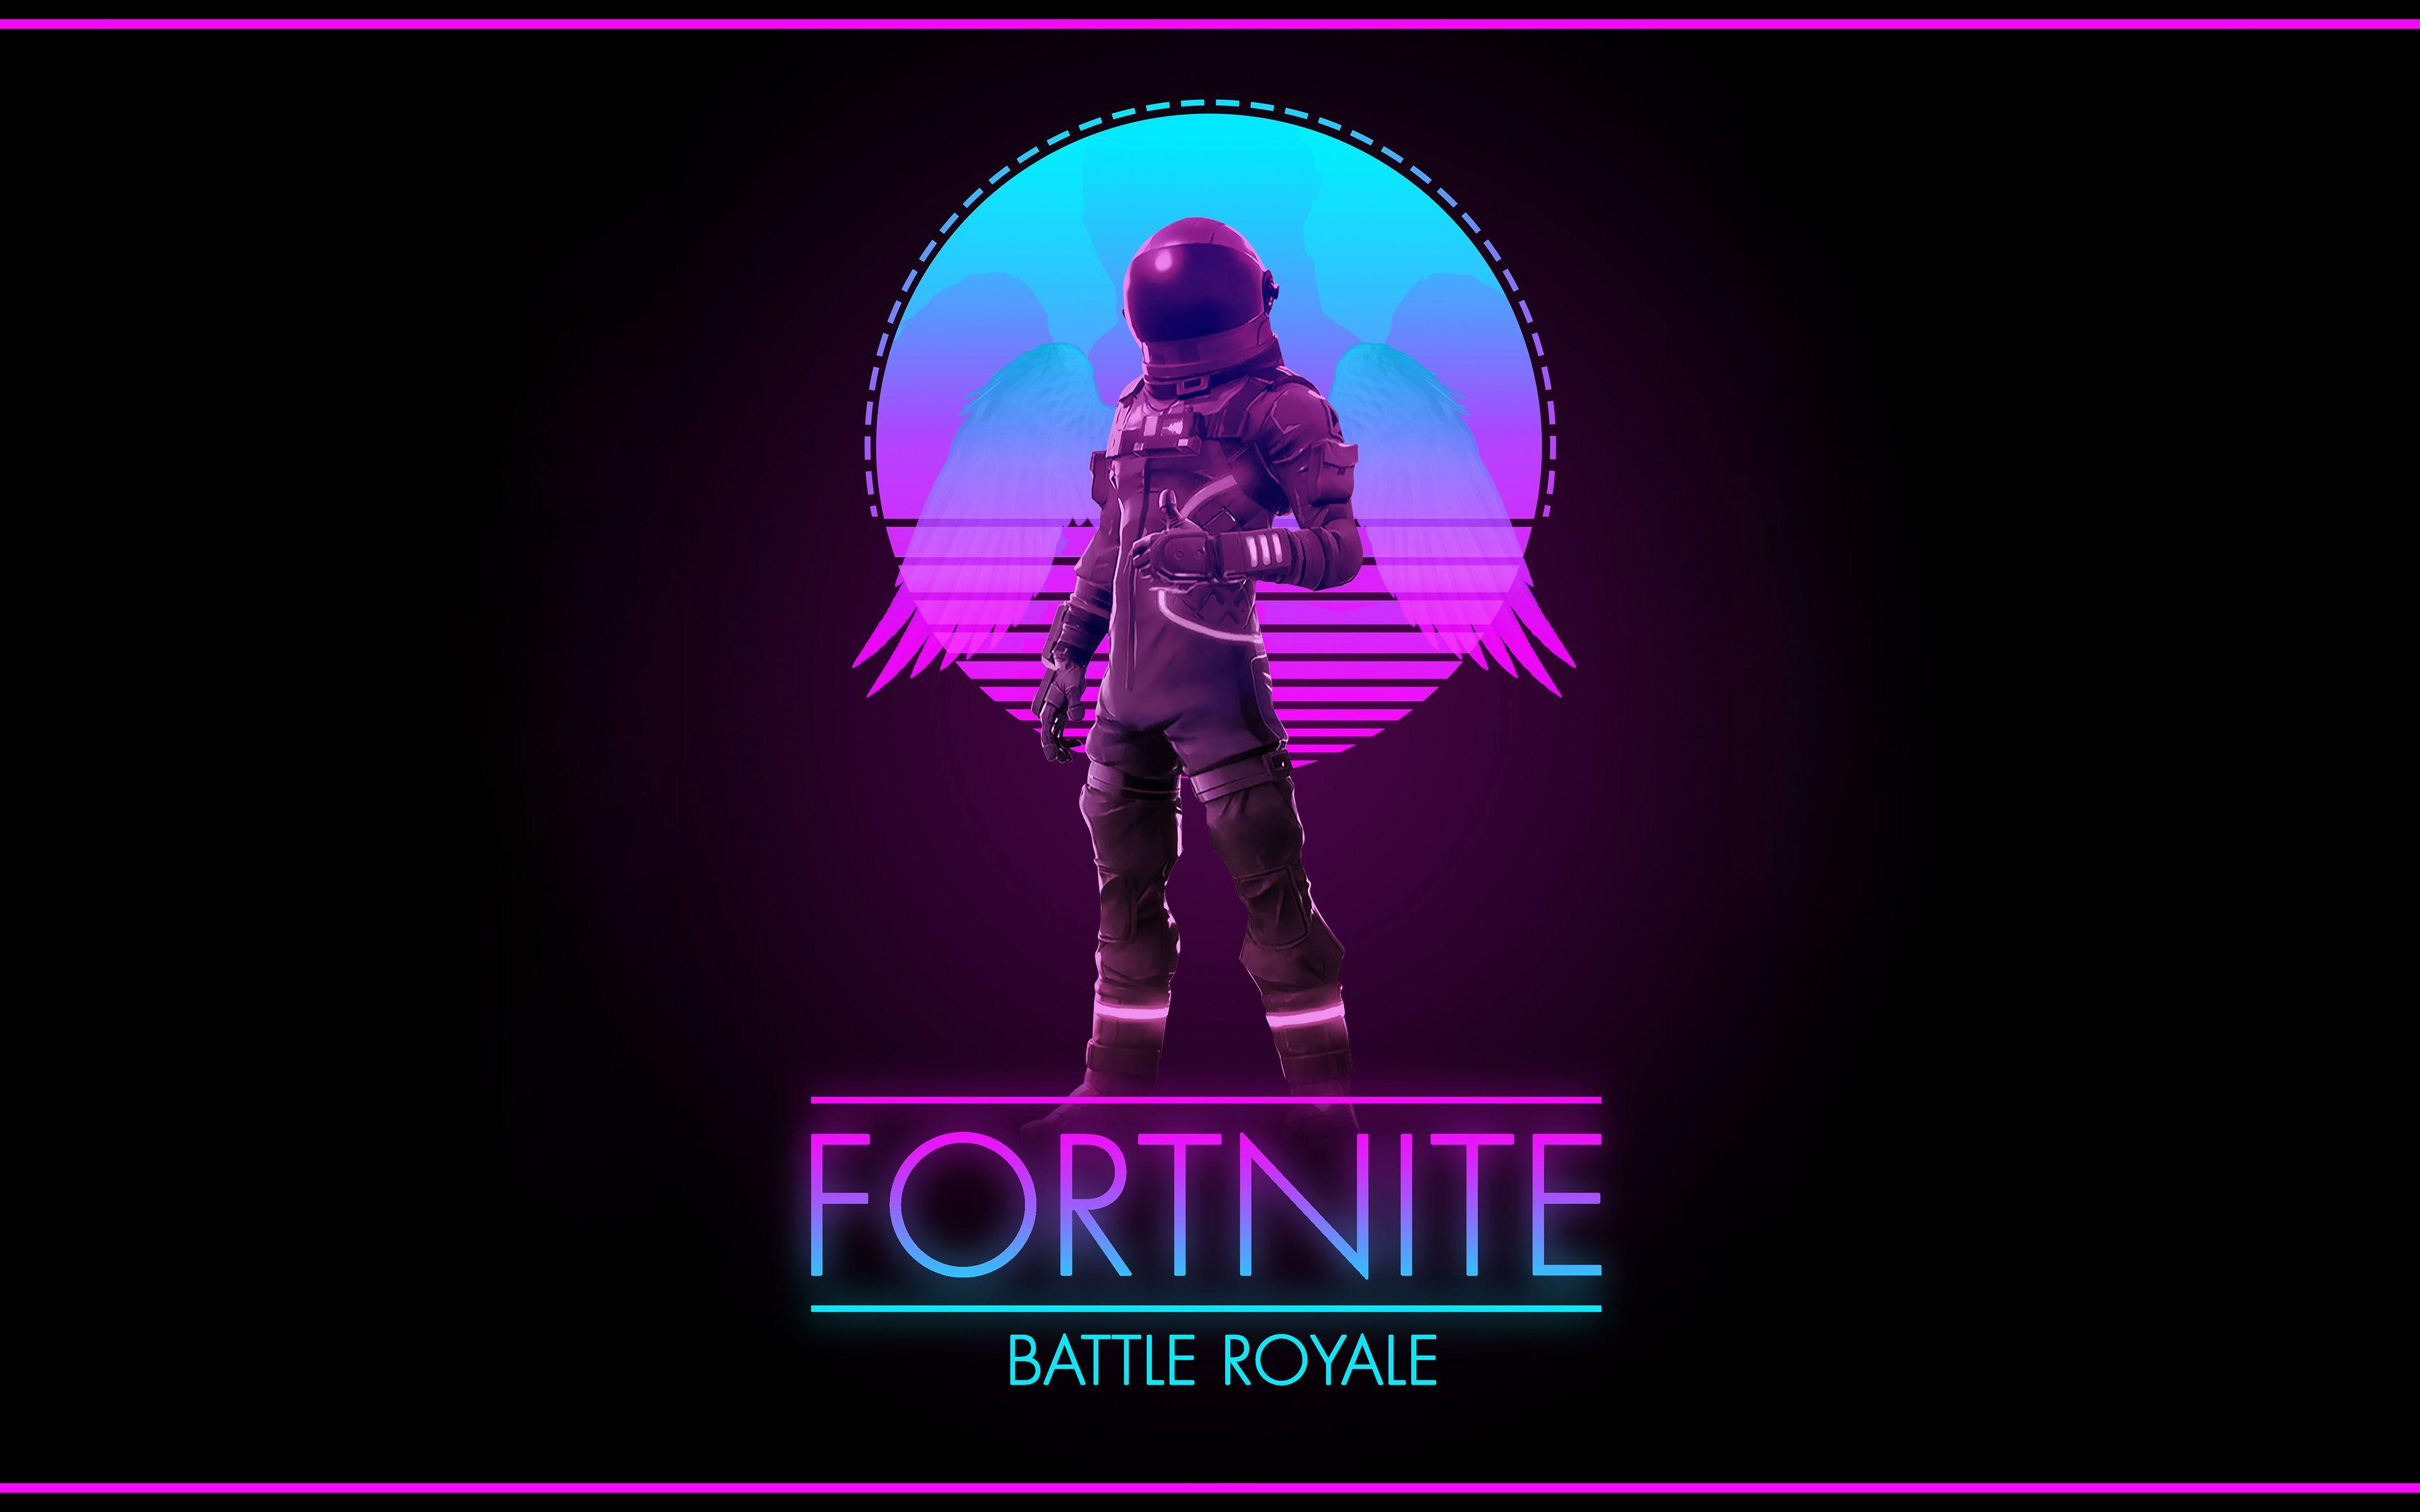 Download wallpaper Fortnite Battle Royale, 4k, 2018 games, artwork